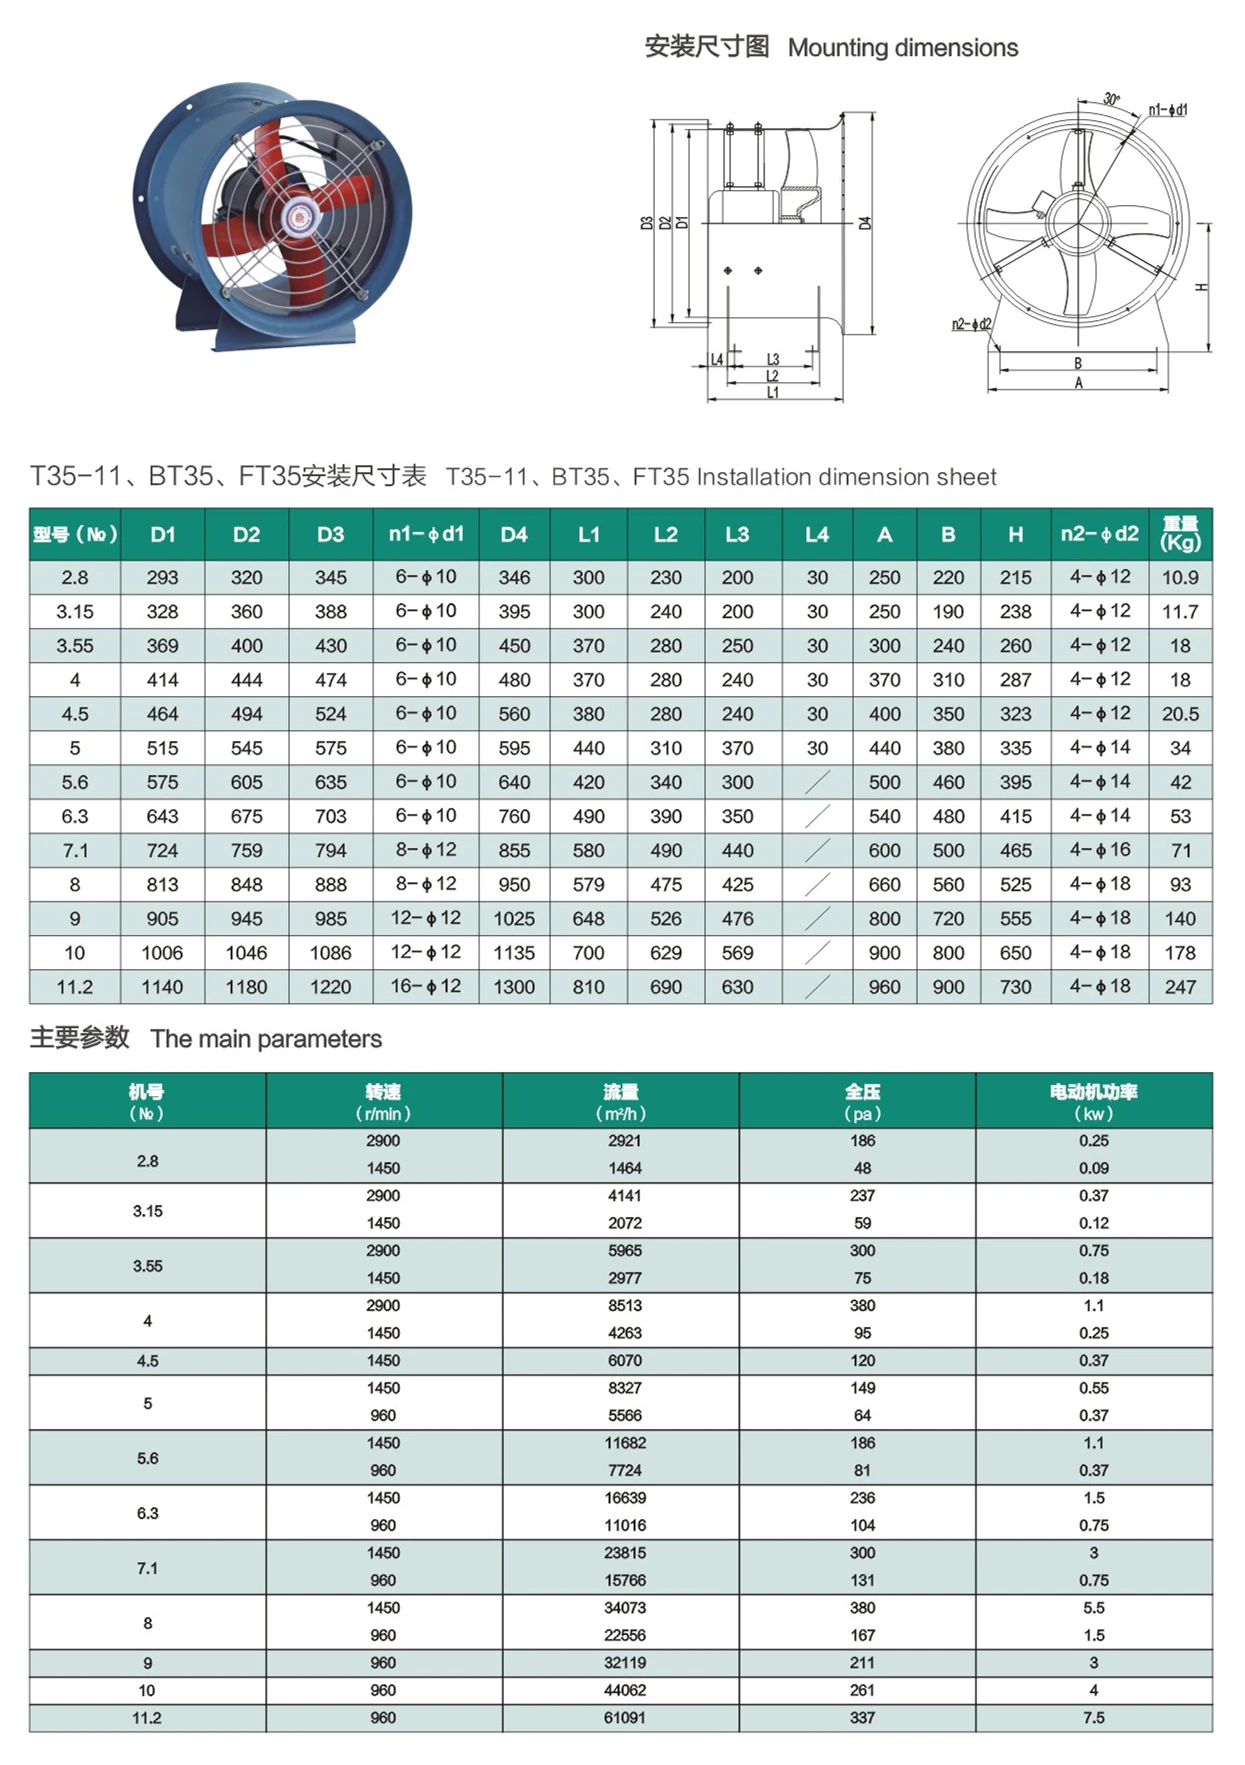 T35-11/BT35/FT35 HIGH EFFICIENCY LOW NOISE AXIAL FAN